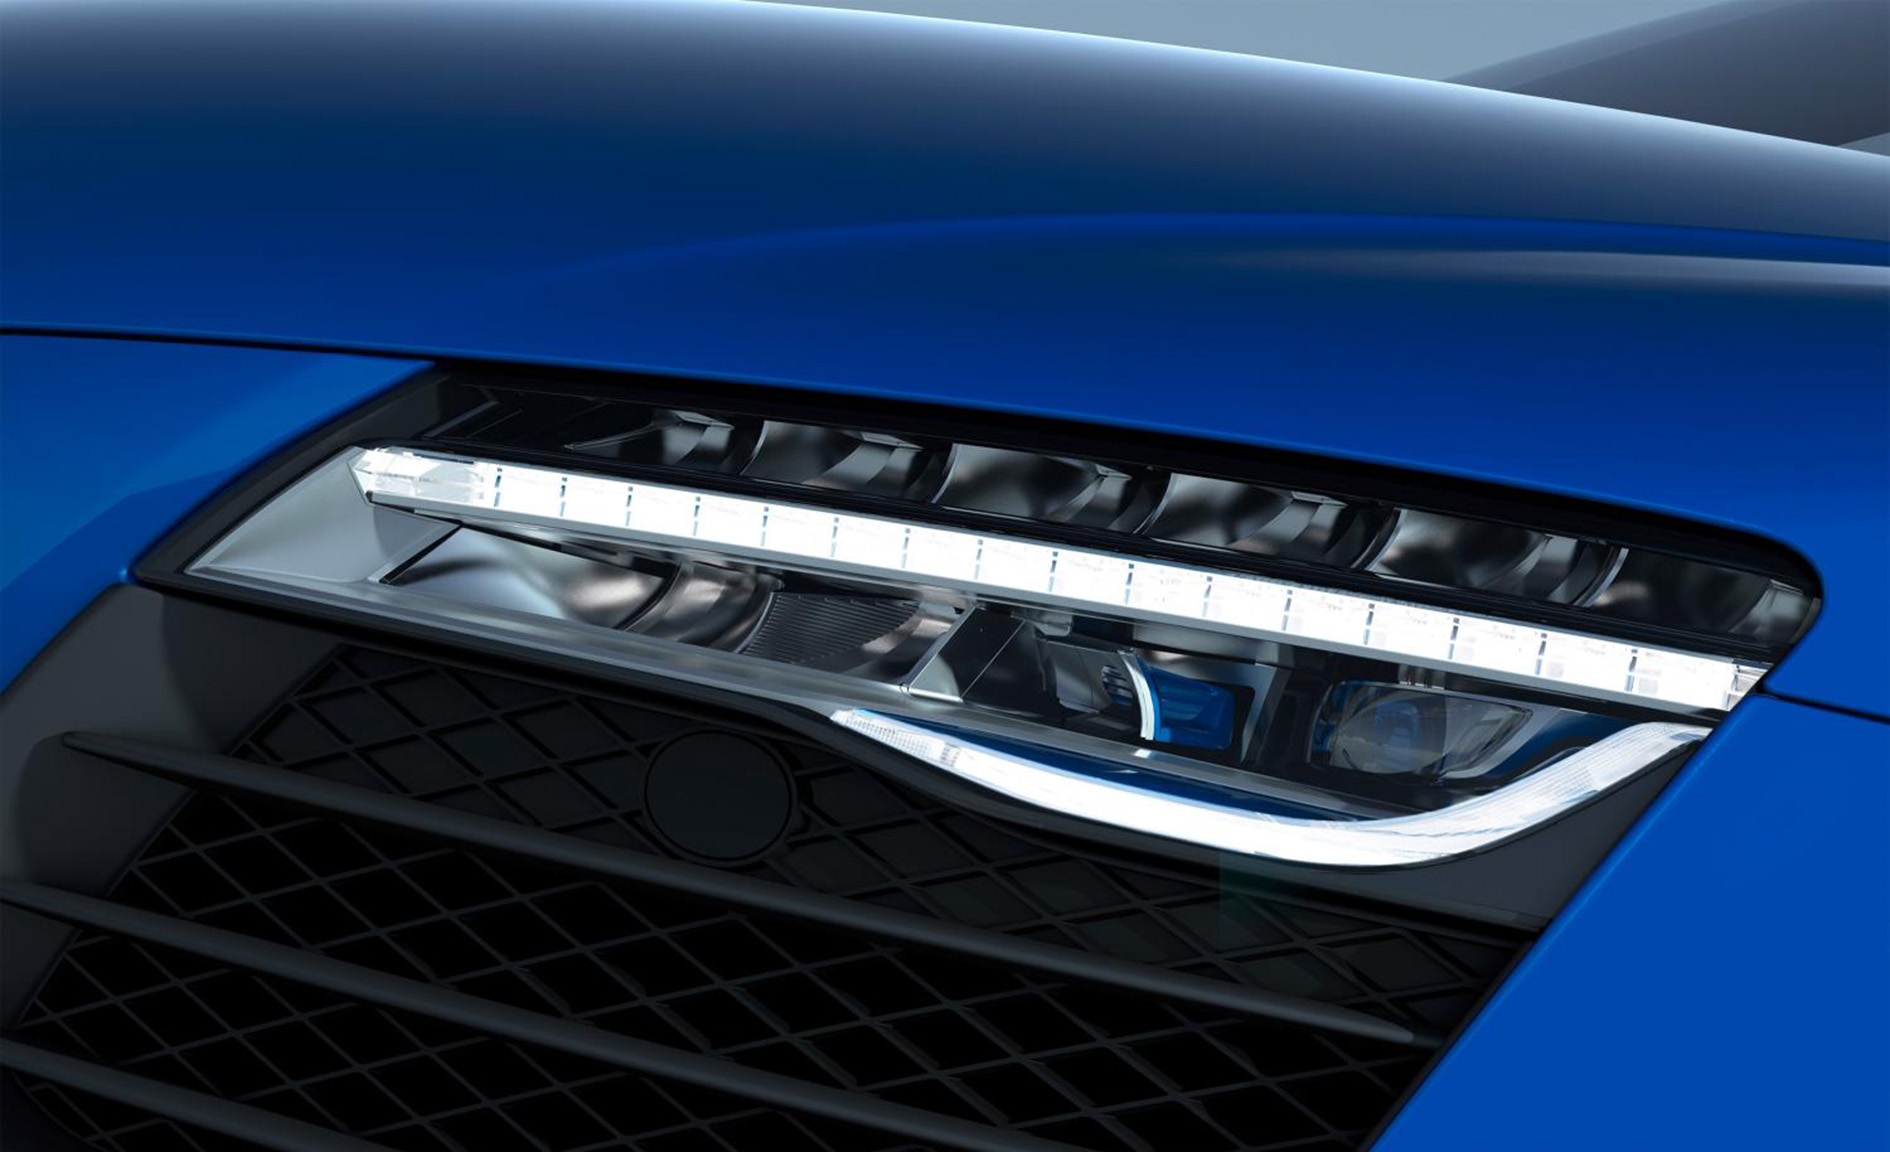 Audi R8 Lmx El Primer Automovil De Produccion Del Mundo Con Faros Laser